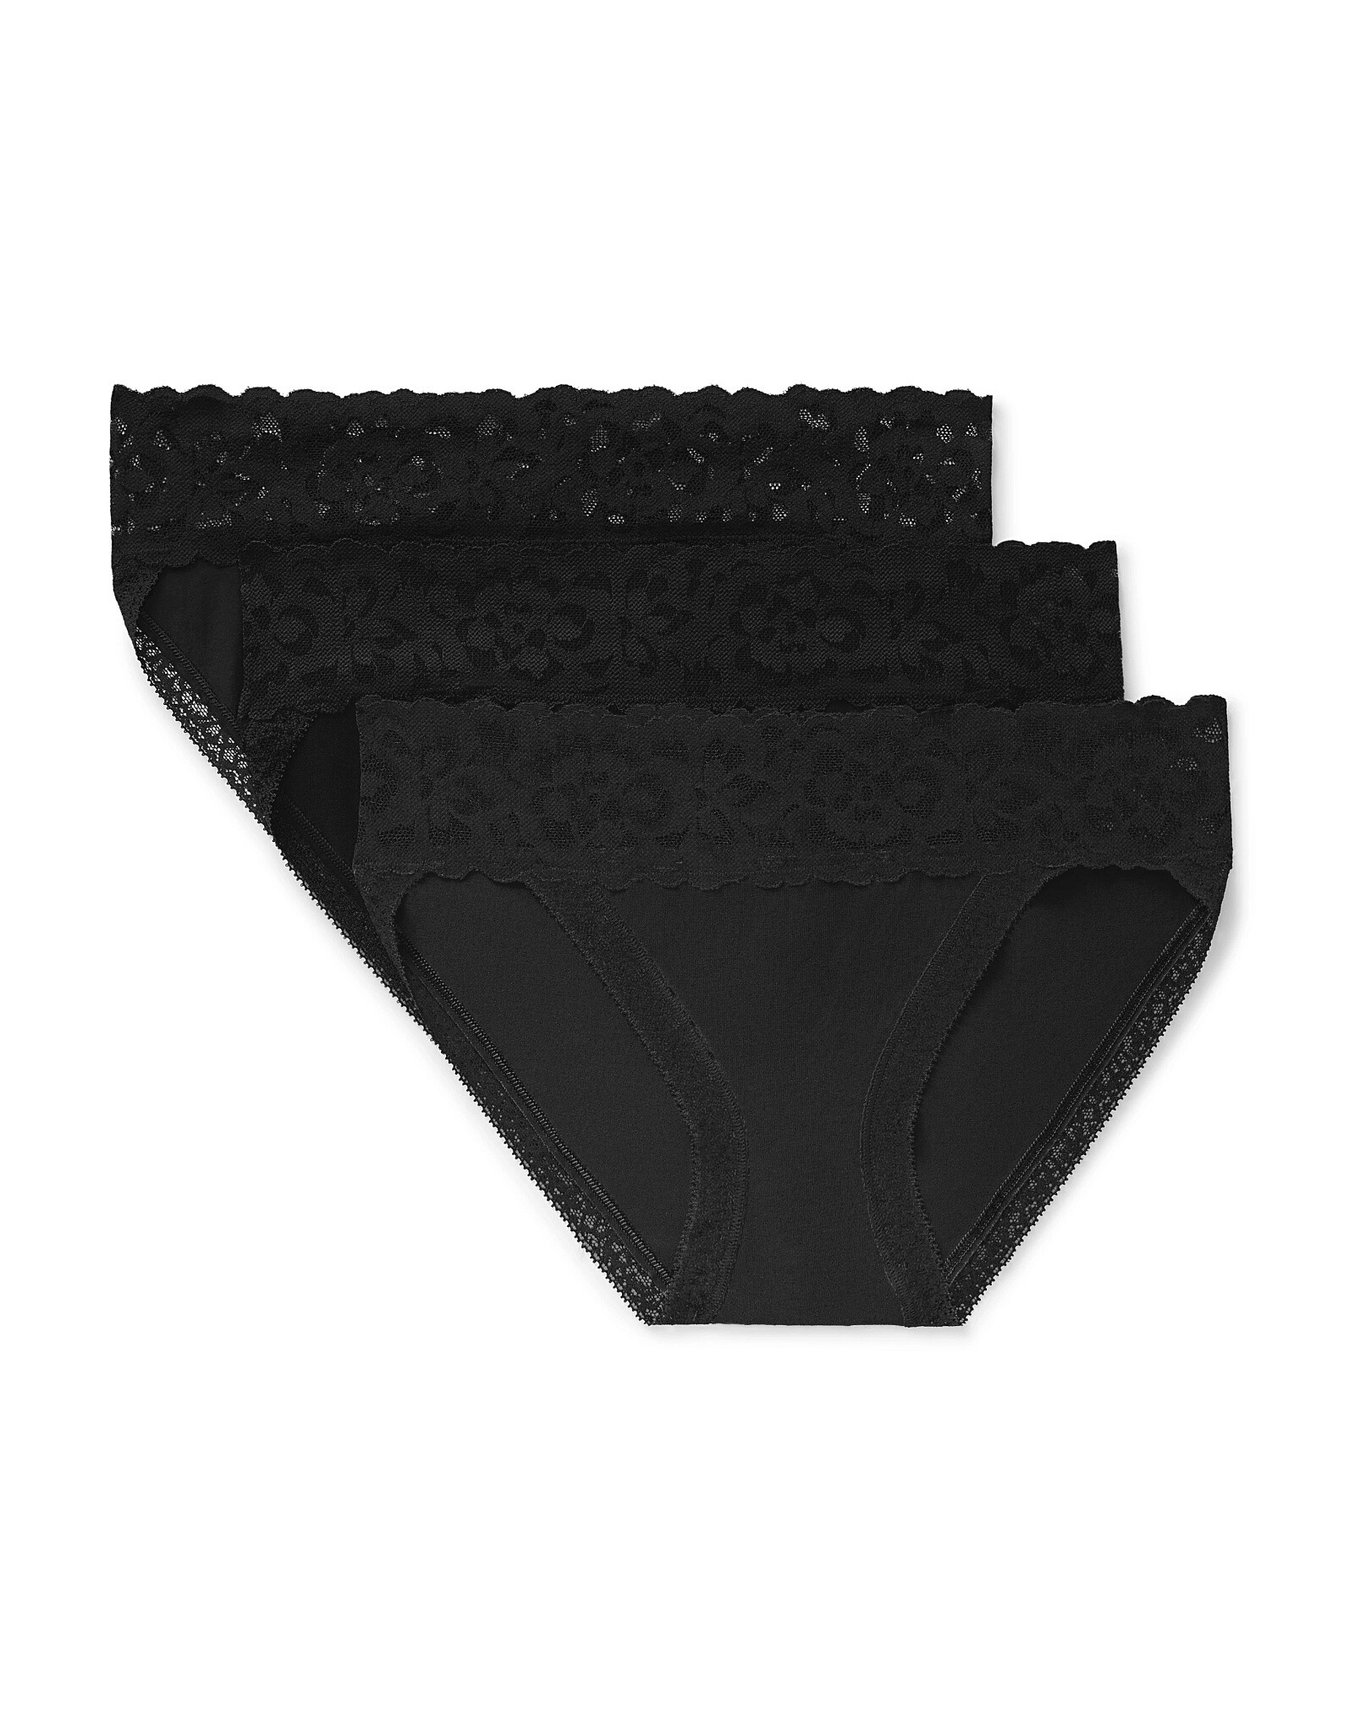 Womens Underwear Lace Trim Bikini Panty Black XXXL